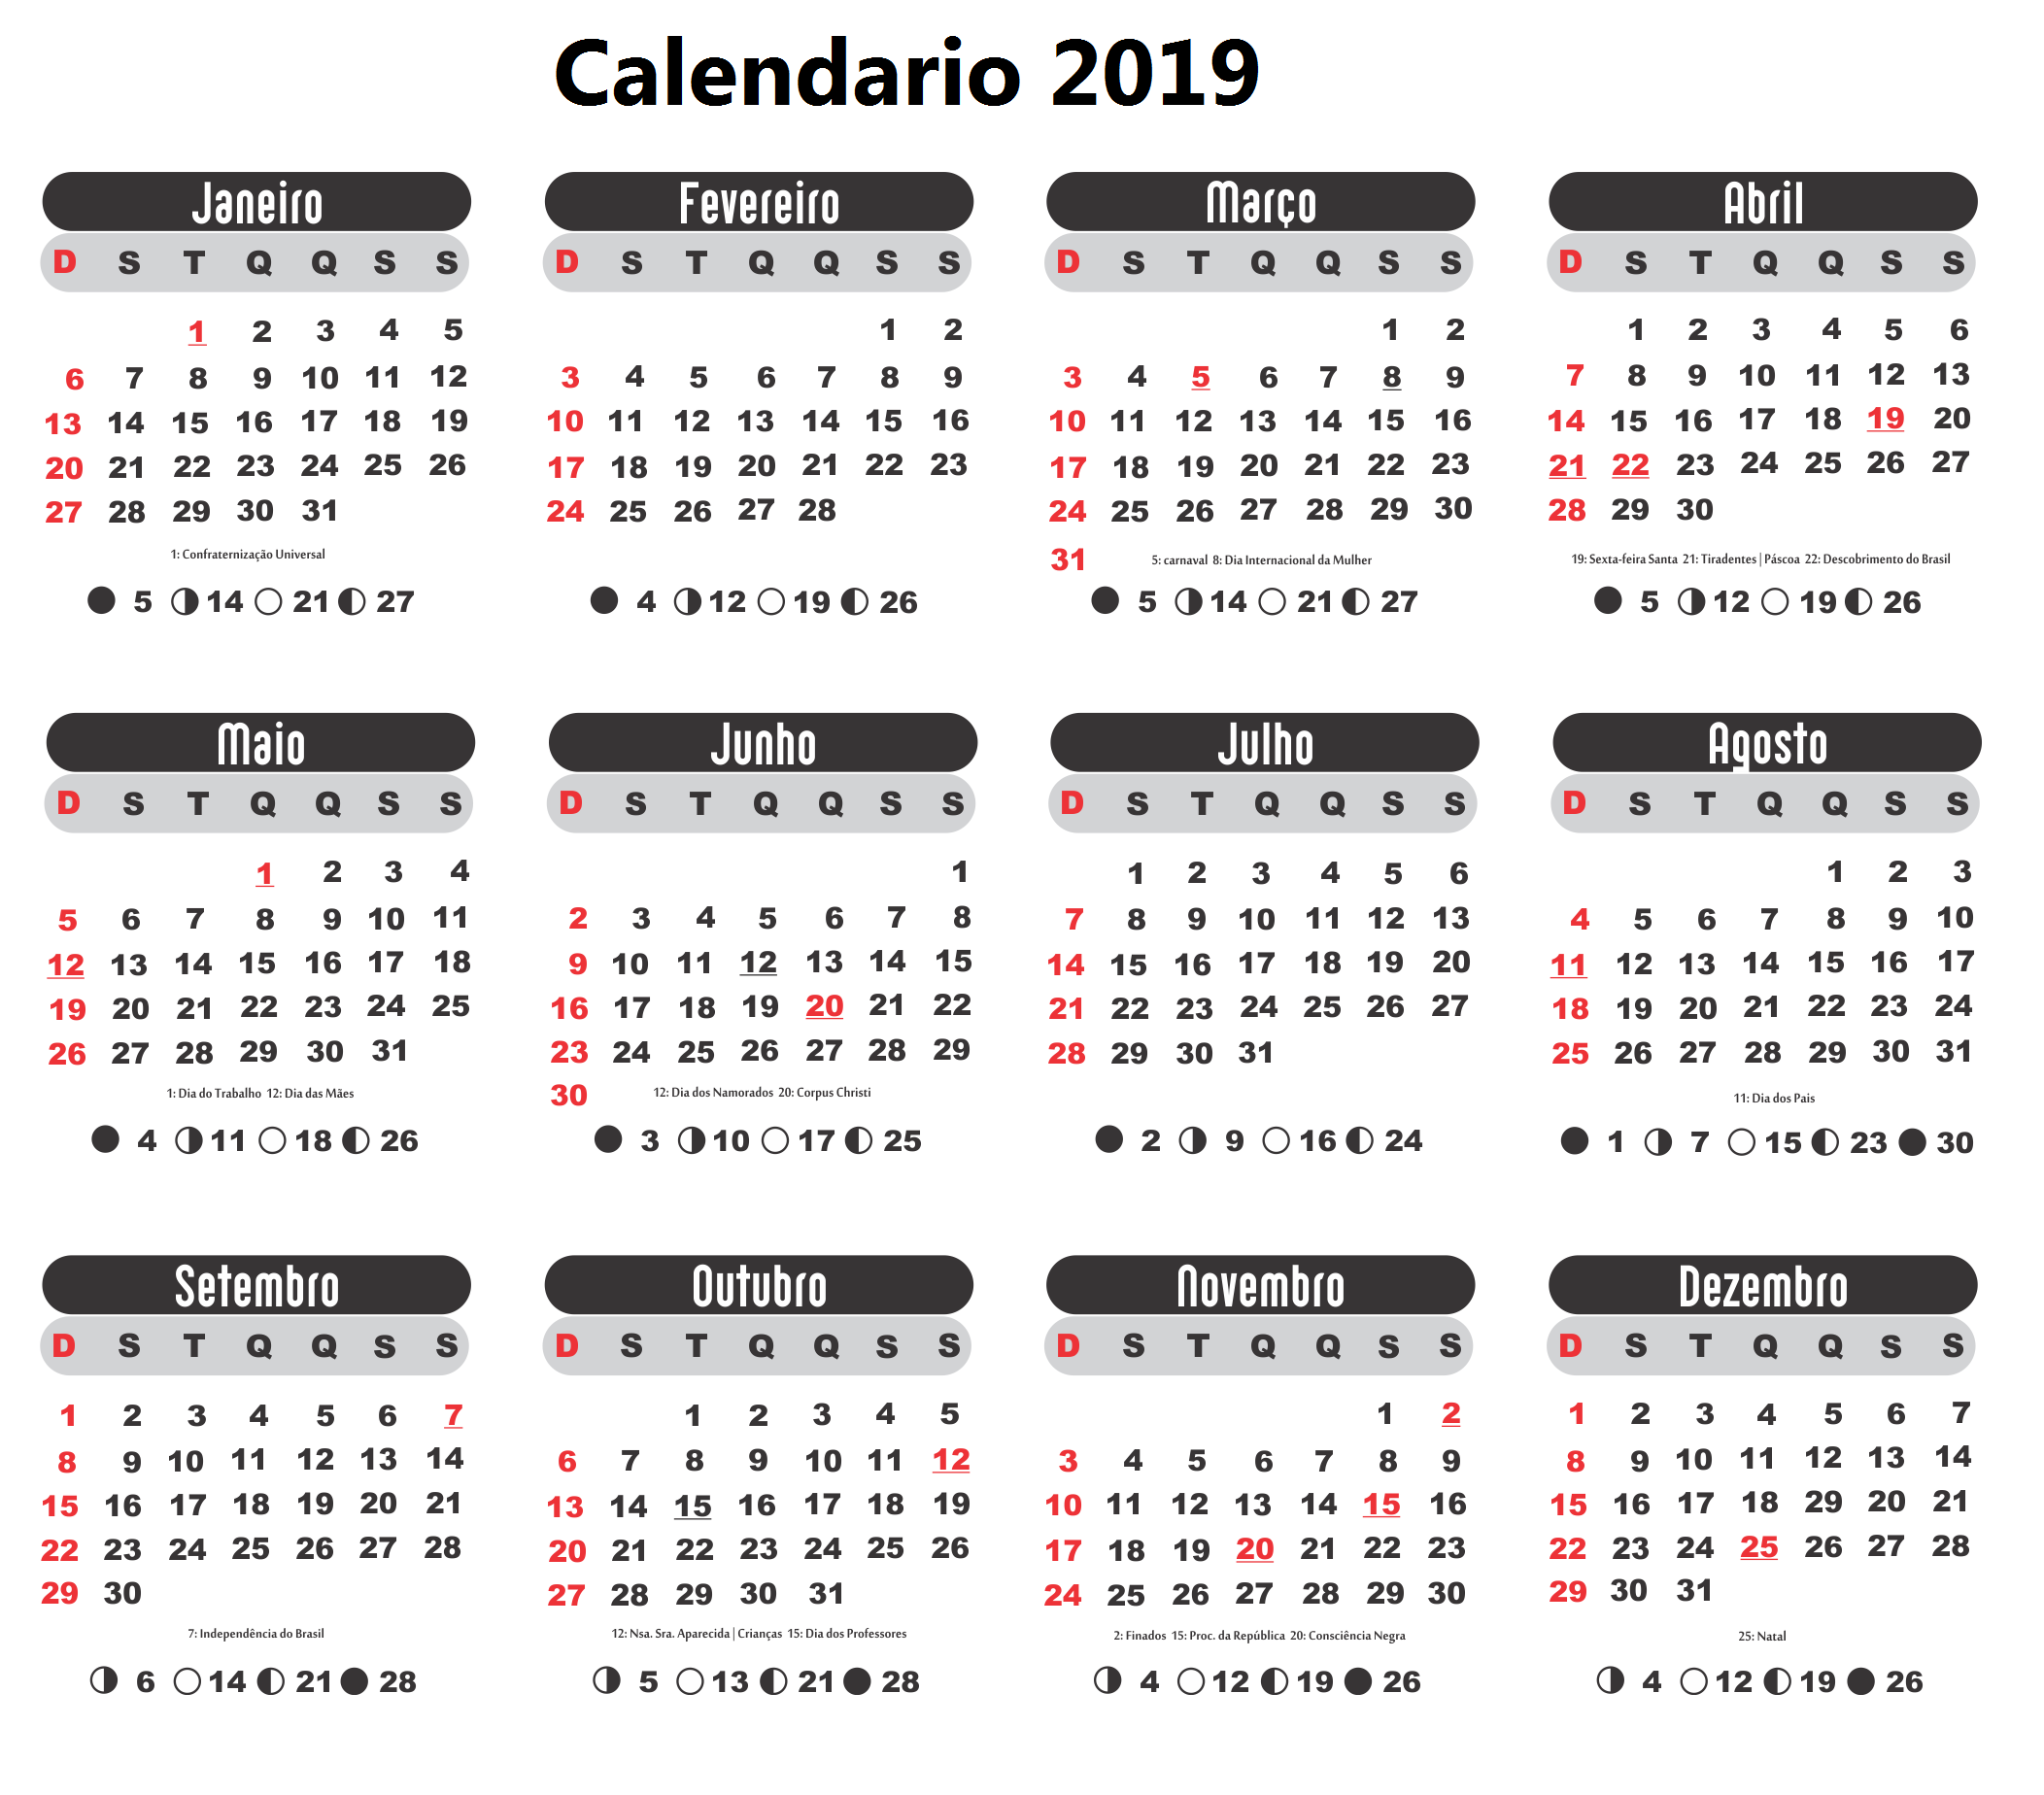 Calendário 2019 Da Stampare.